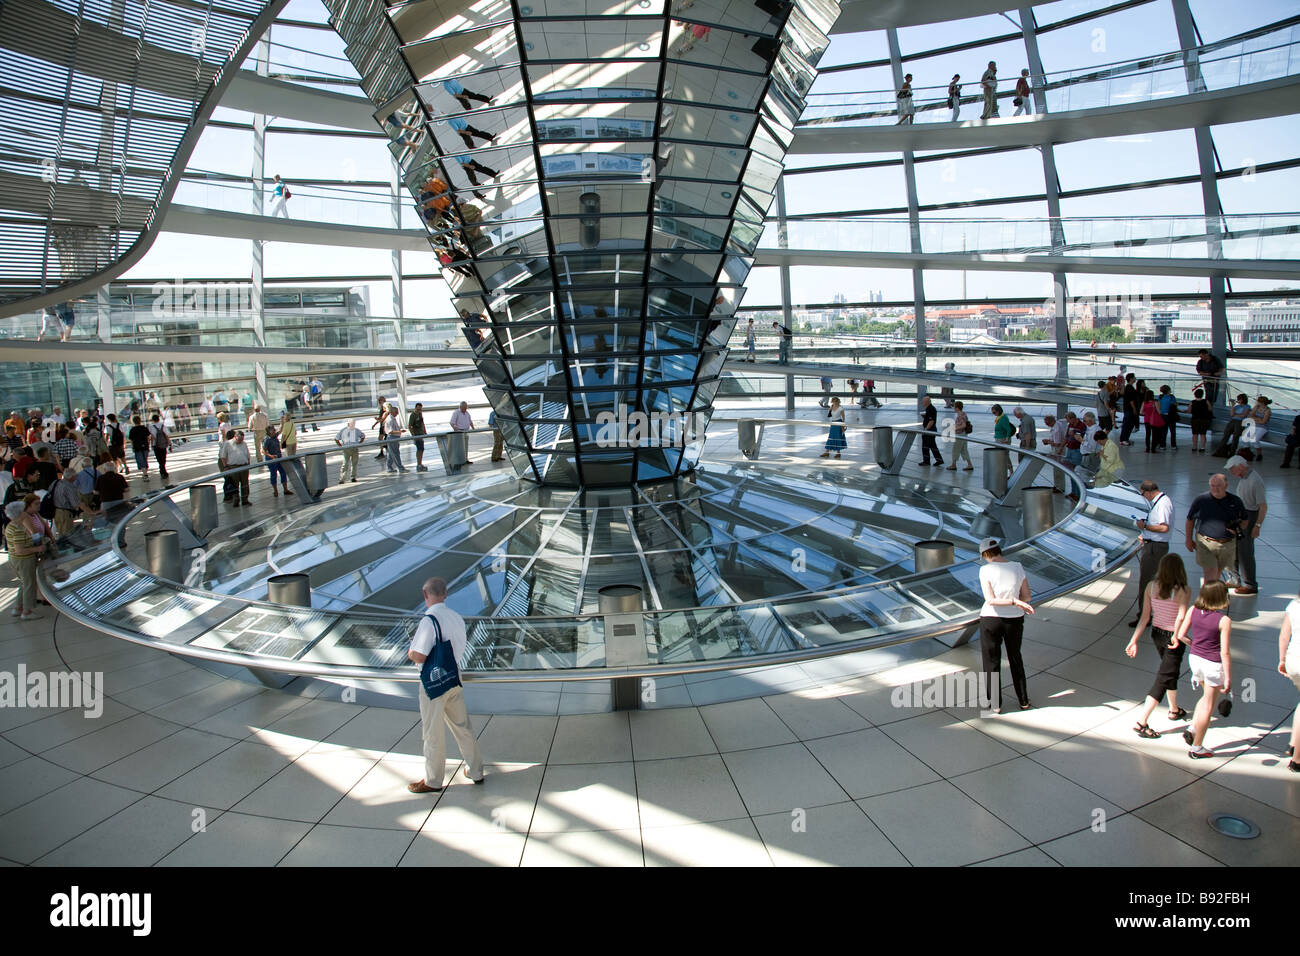 La cupola di vetro in cima al Reichstag dove i visitatori possono osservare il Bundestag la Camera Bassa del parlamento tedesco Foto Stock